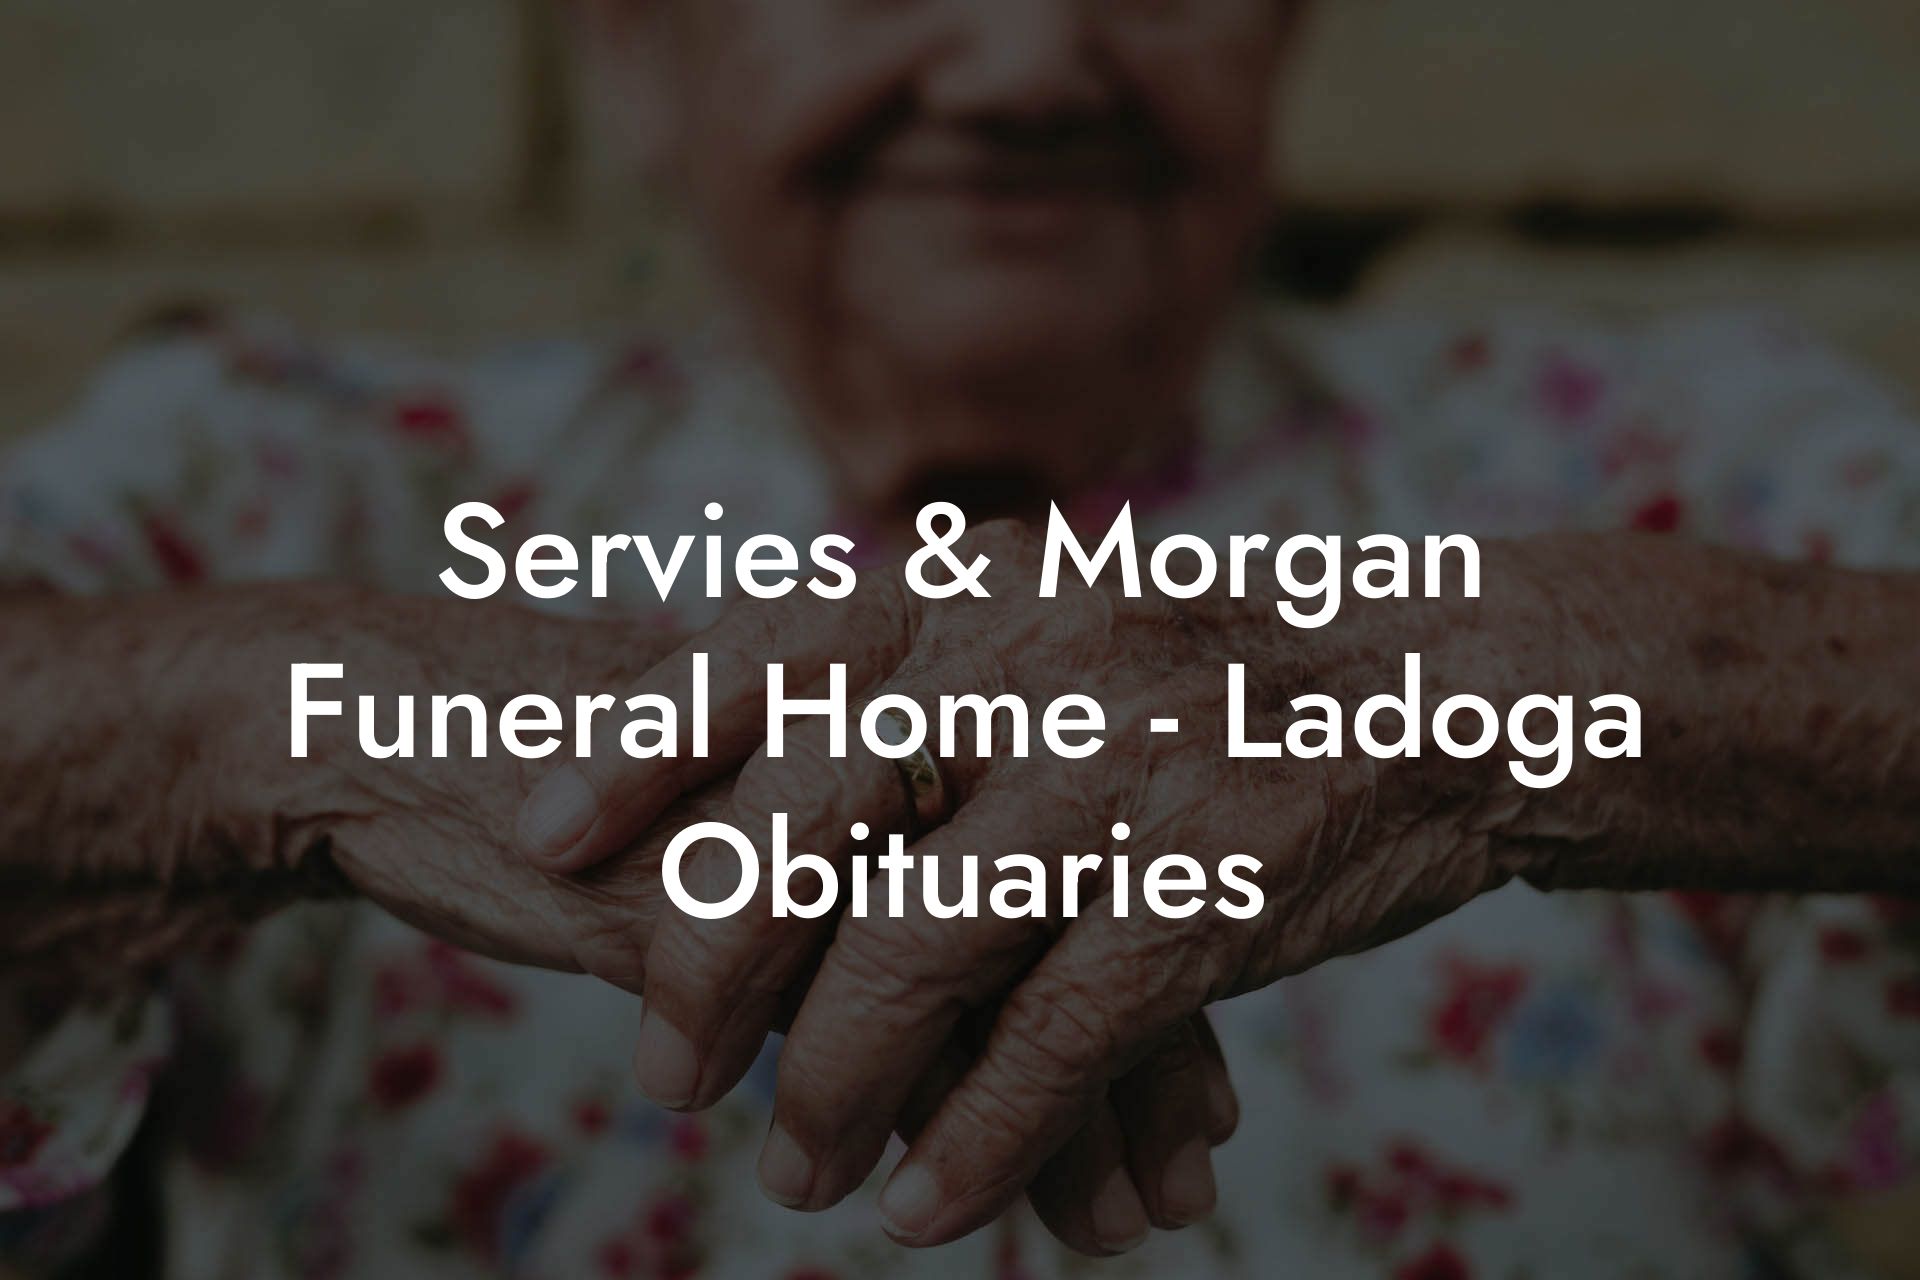 Servies & Morgan Funeral Home - Ladoga Obituaries